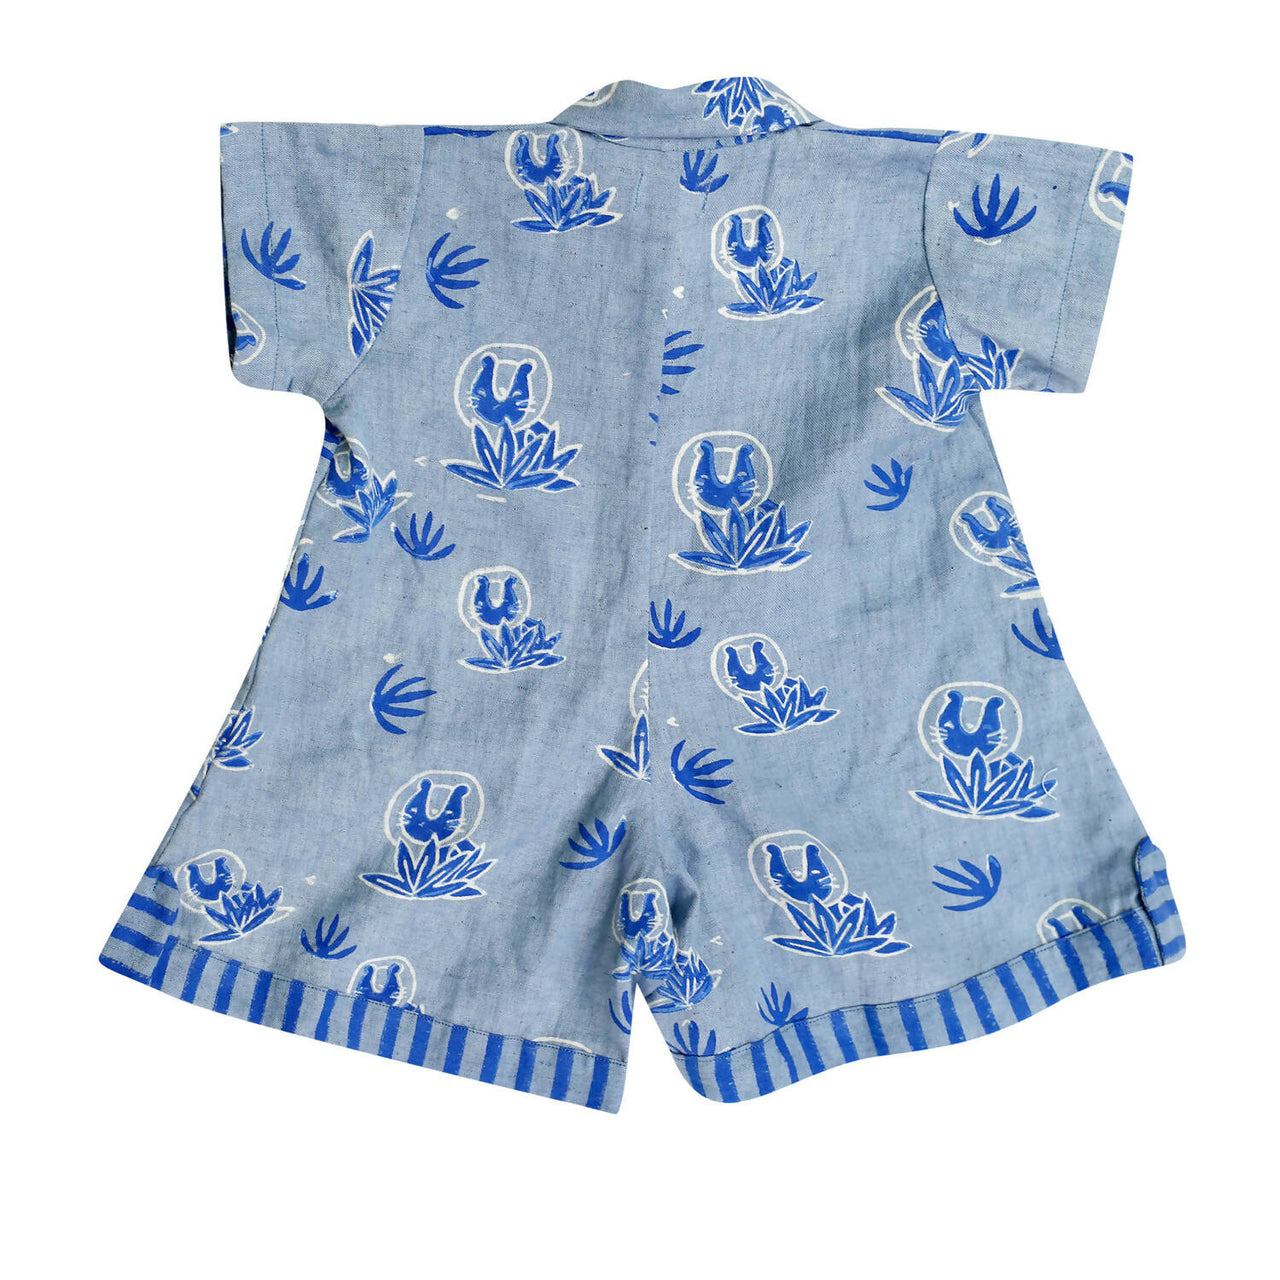 Mhyssa Blue Round Neck Patch Pocket Half Sleeves Romper For Kids - Distacart